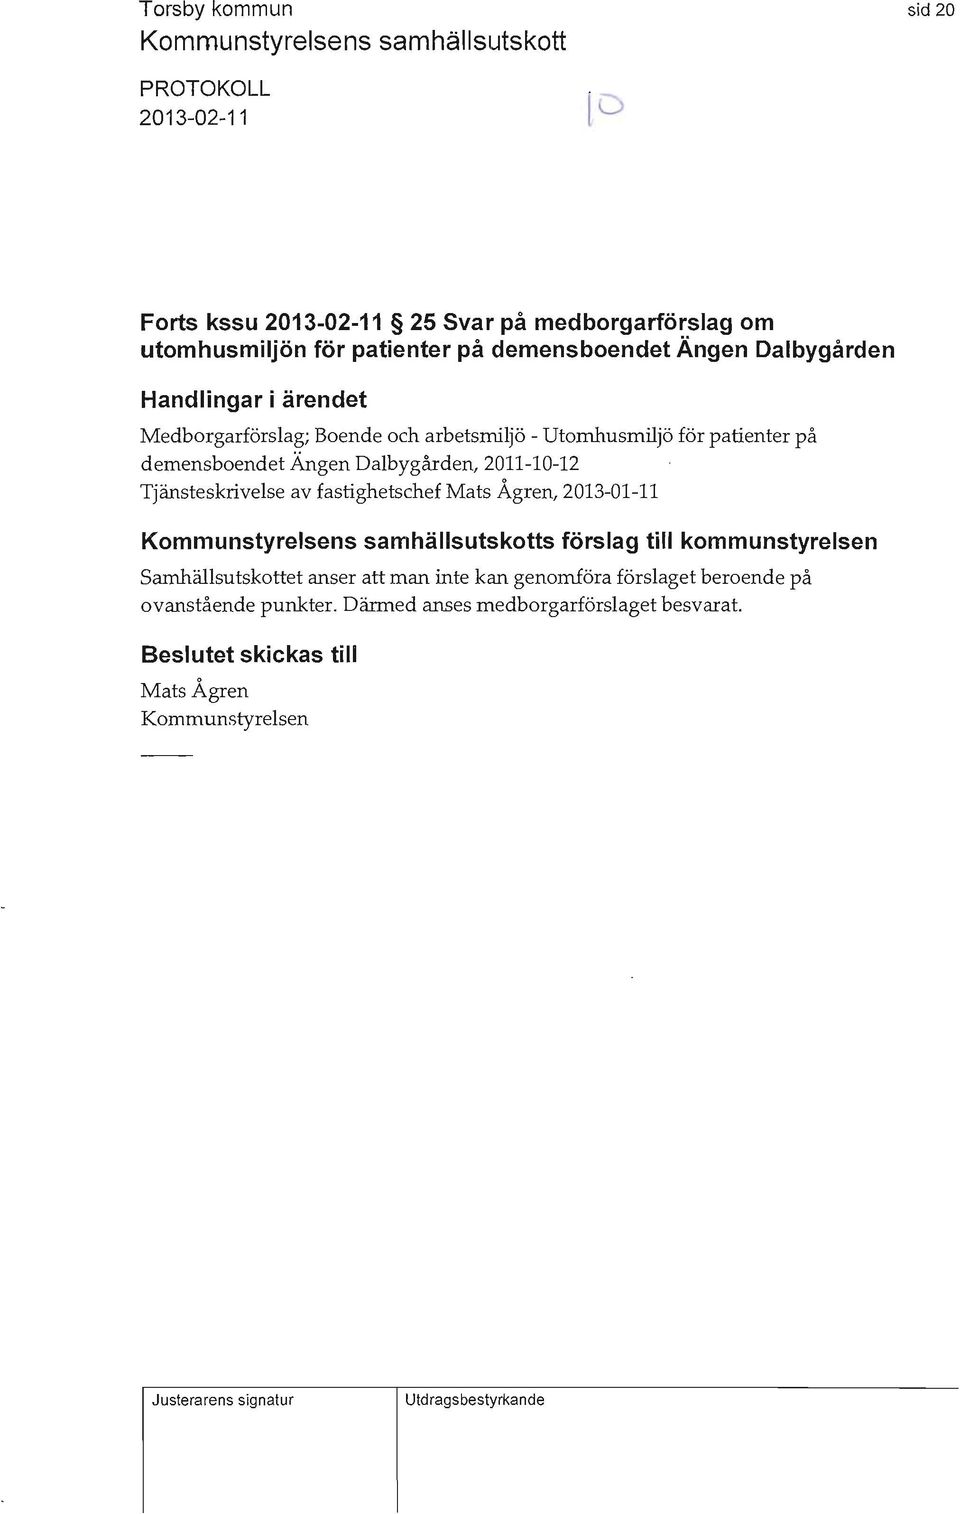 2011-10-12 Tjänsteskrivelse av fastighetschef Mats Ågren, 2013-01-11 Kommunstyrelsens samhällsutskotts förslag till kommunstyrelsen Samhällsutskottet anser att man inte